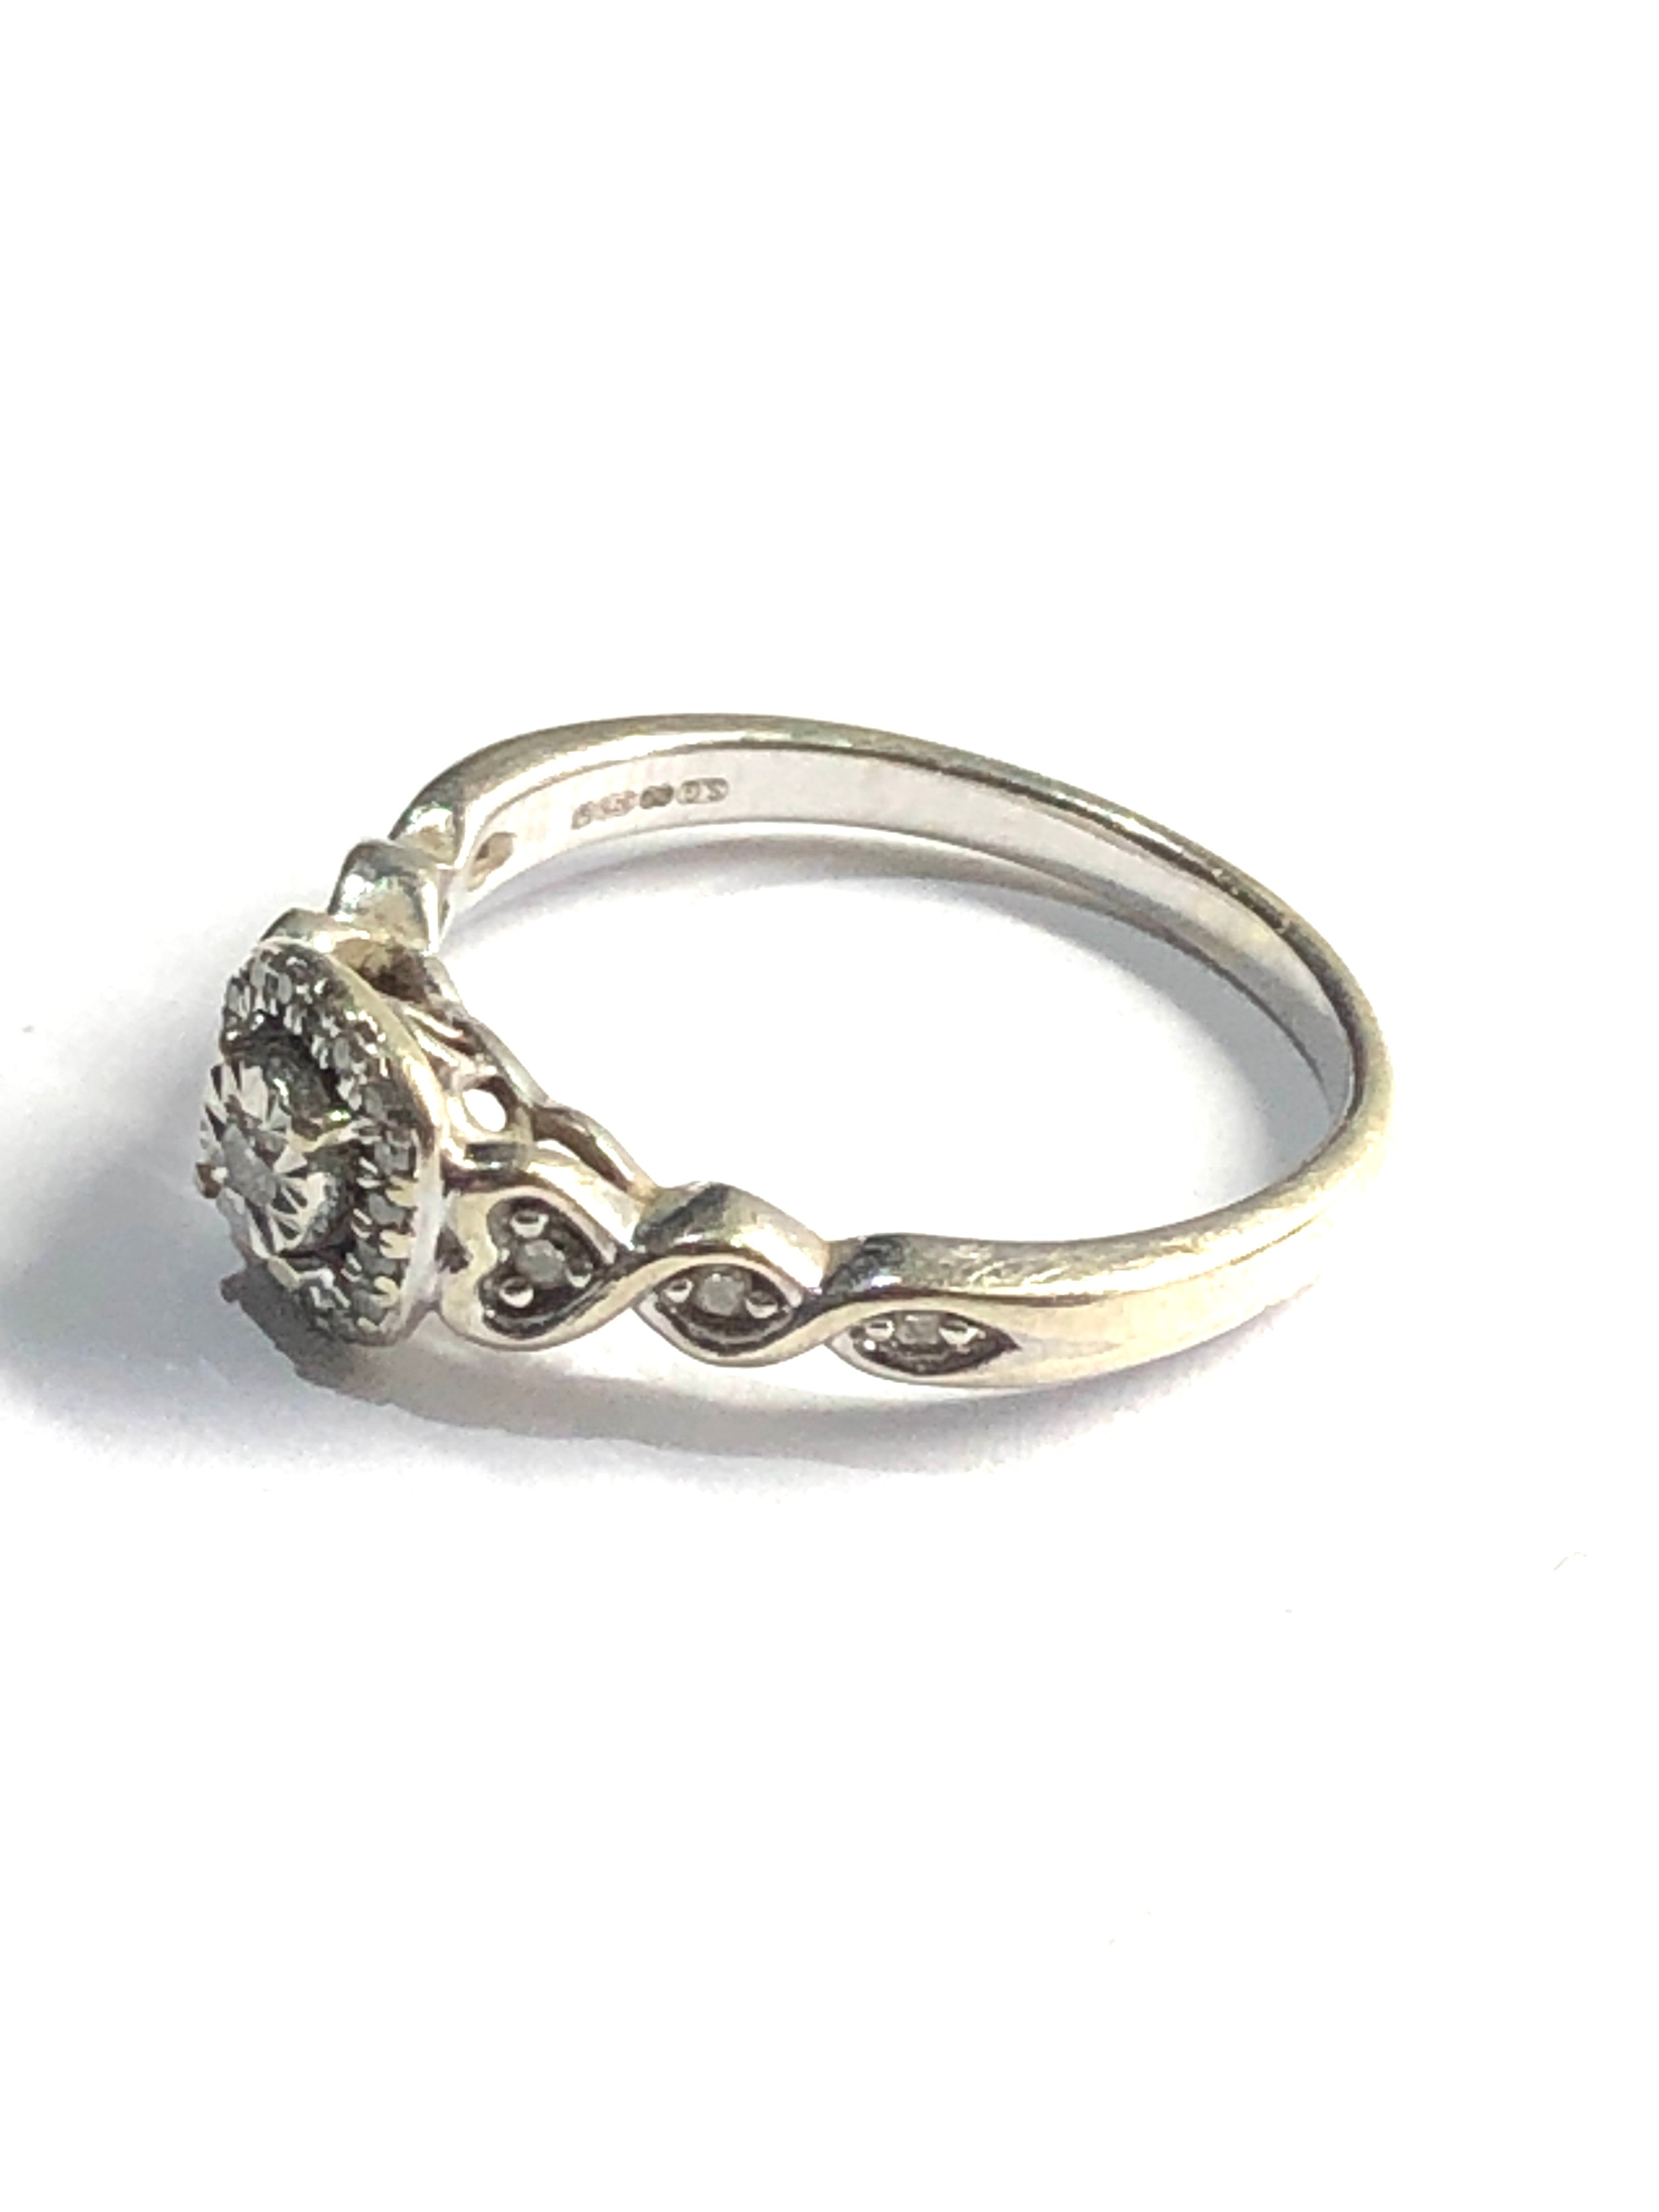 9ct white gold diamond ring weight 2.6g 0.10ct diamonds - Image 2 of 3